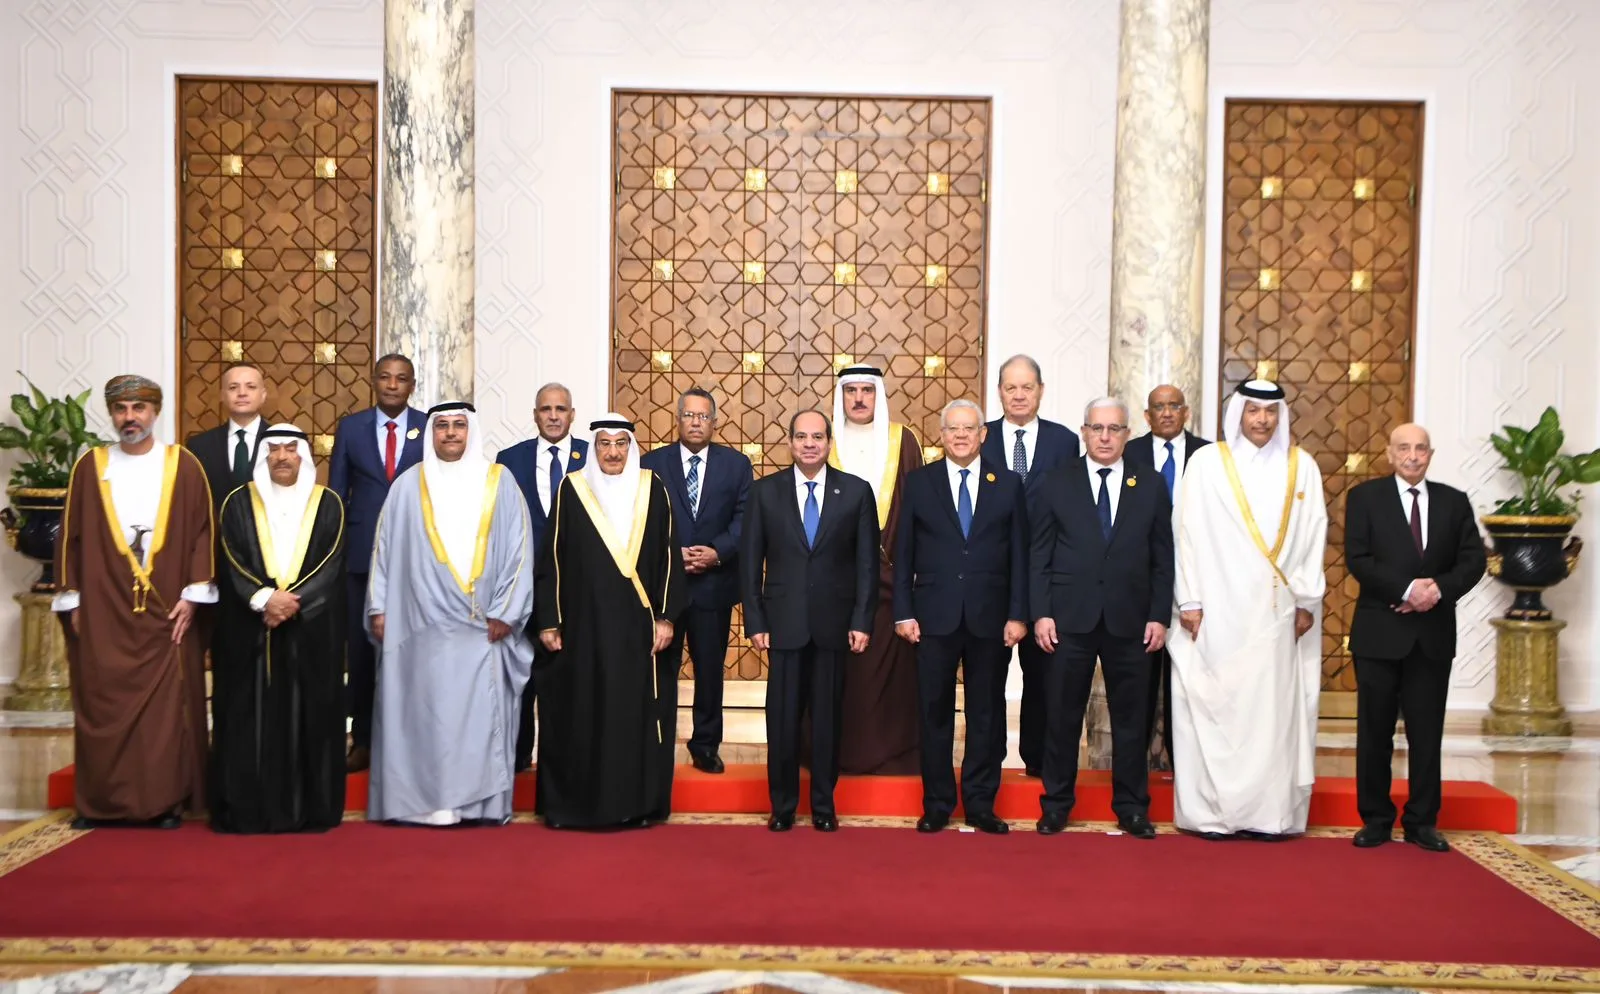 الرئيس السيسي يستقبل رؤساء المجالس والبرلمانات العربية